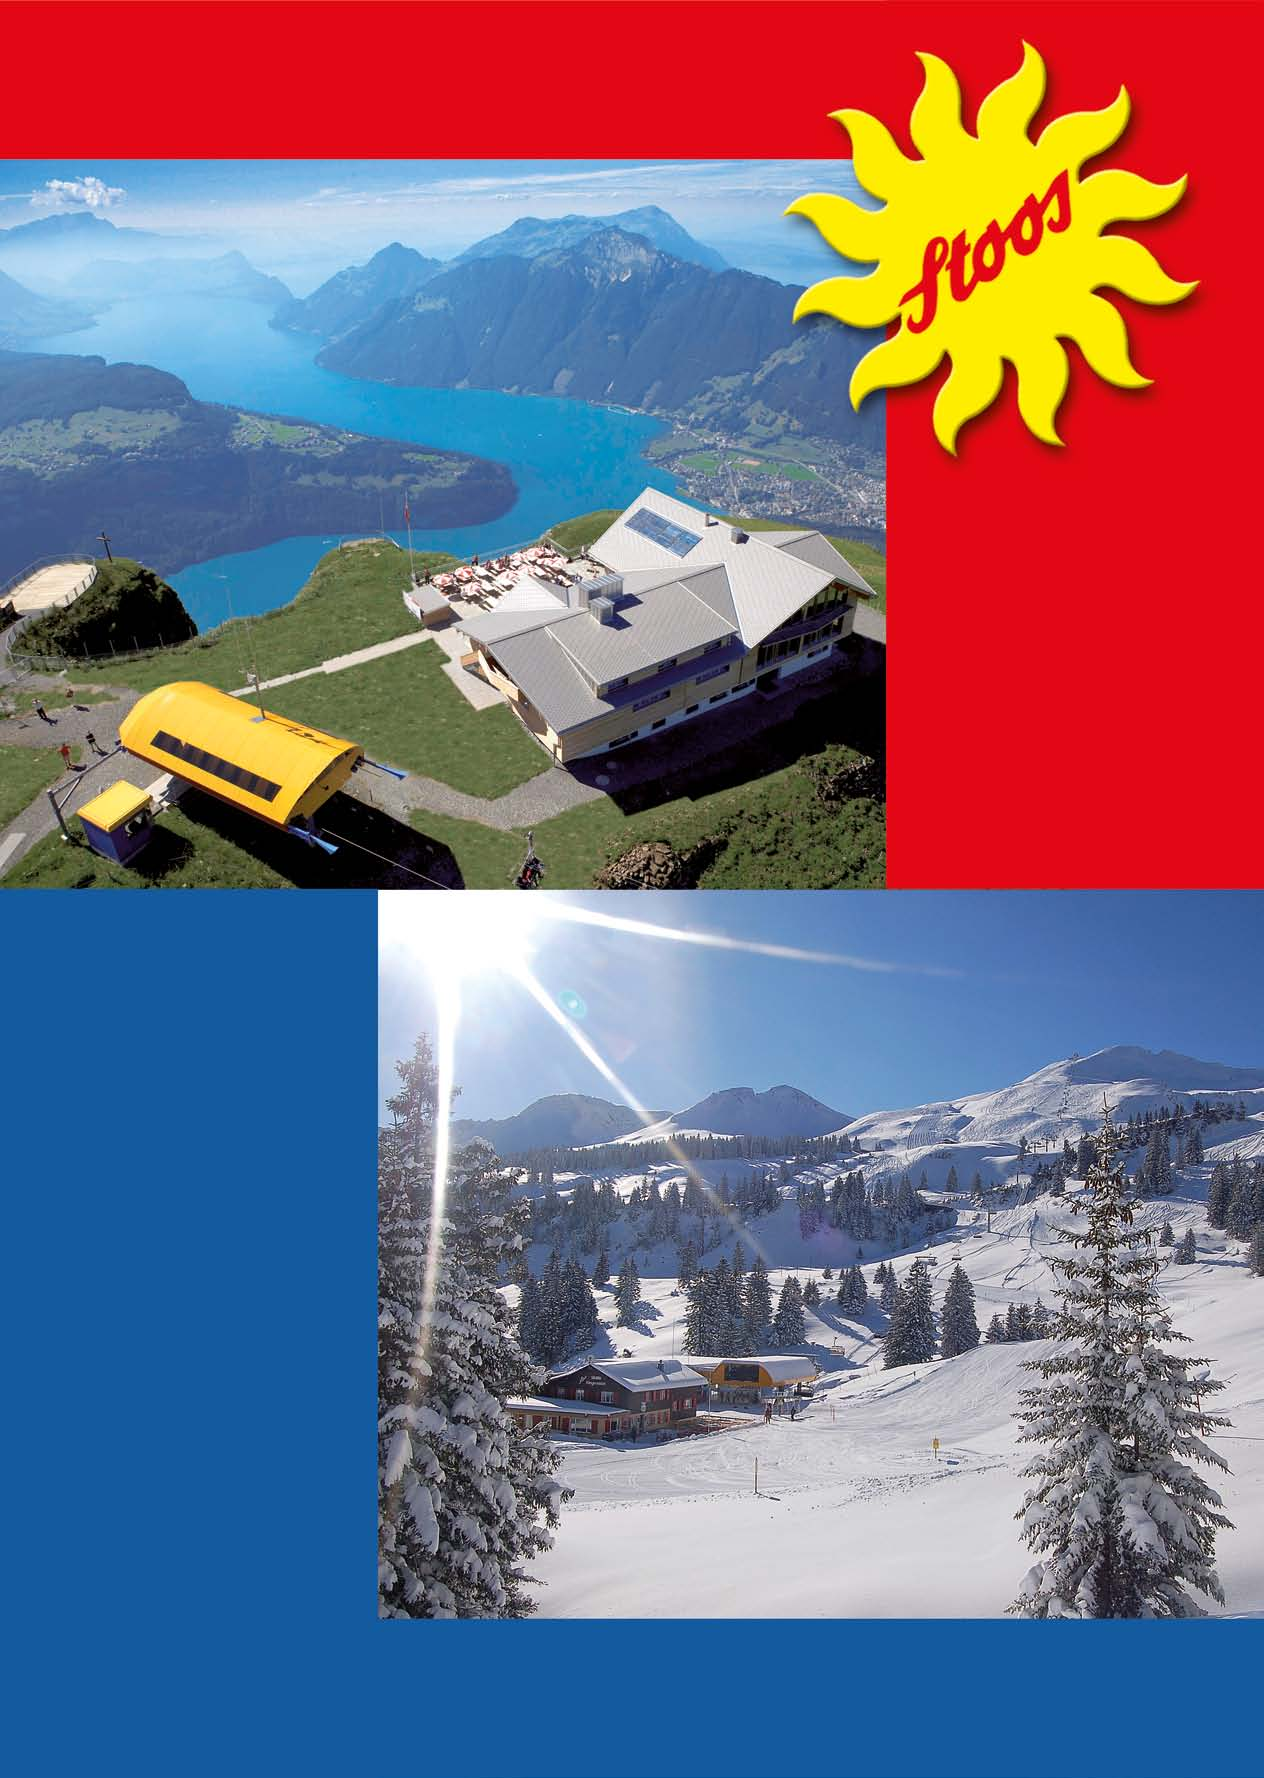 Stoos Ihr Freizeitparadies in der Zentralschweiz Sommer Atemberaubende Aussicht auf über 10 Schweizer Seen und den ganzen Weg der Schweiz Schönster Urschweizer Gratwanderweg vom Klingenstock zum